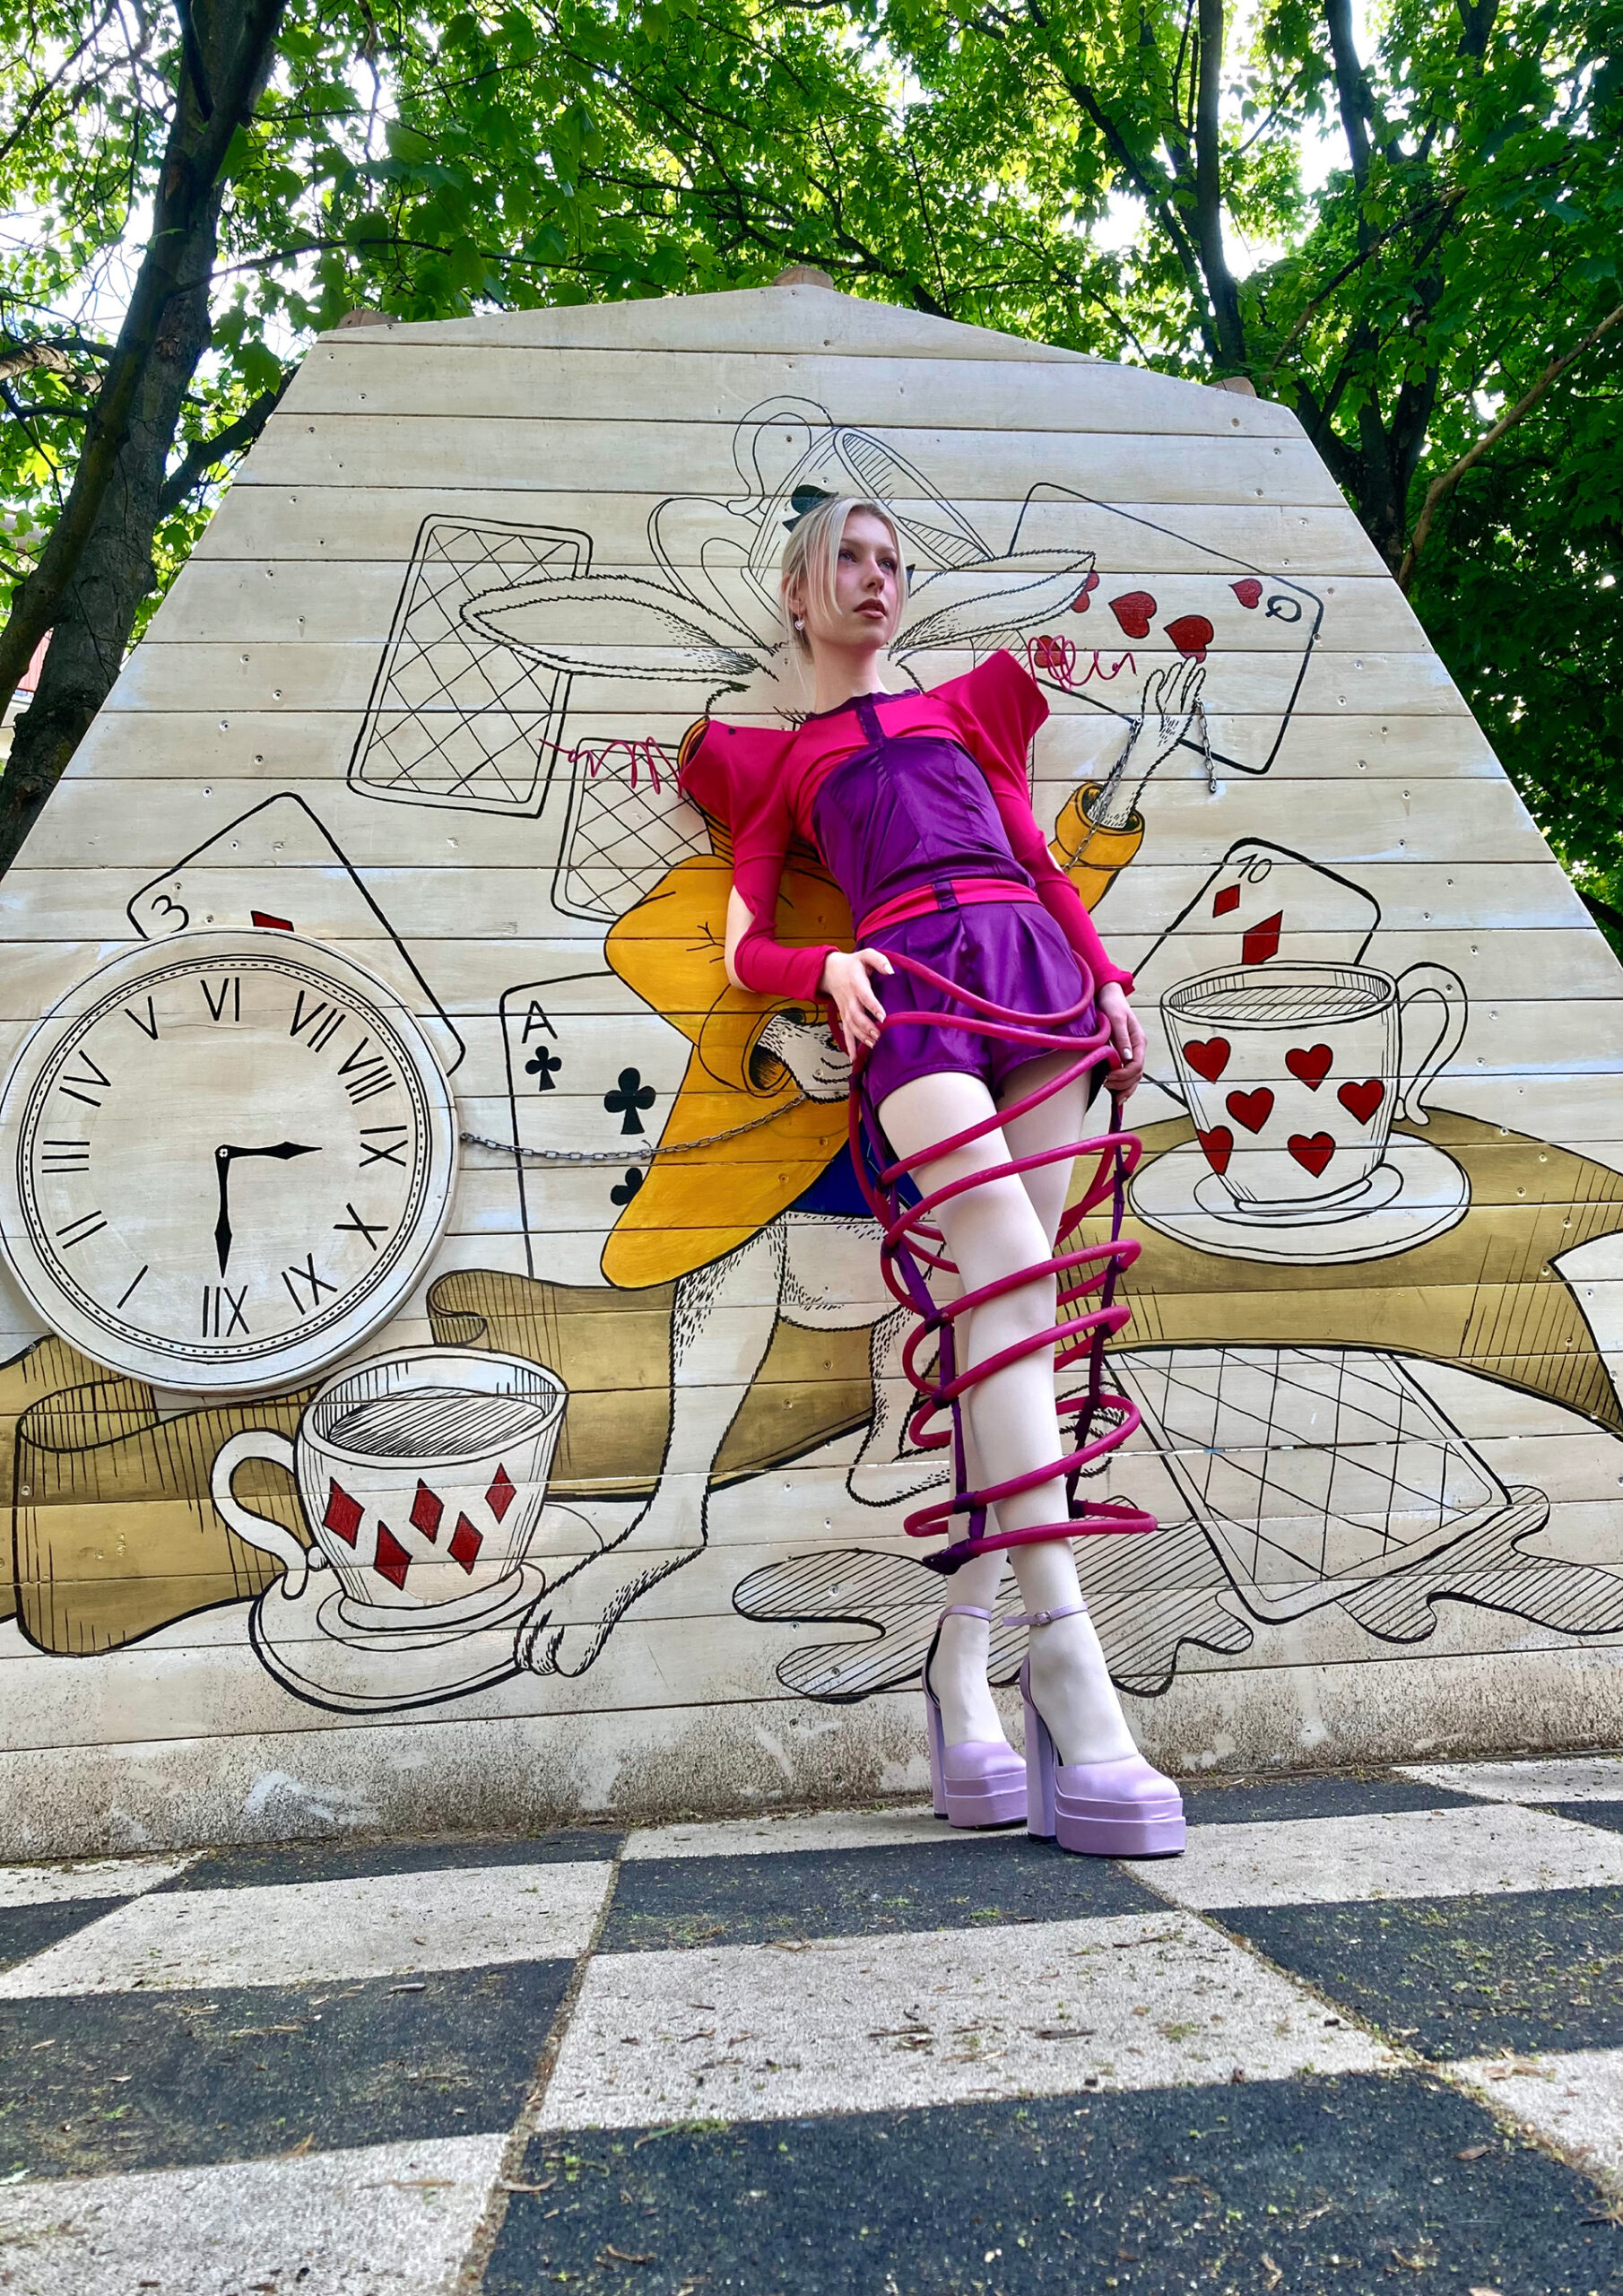 Kobieta w kolorowym, różowo-fioletowym kostiumie z obręczami wokół nóg i fiołkowych wysokich butach. Stoi na szachownicy, opiera się o ścianę z ilustracją przedstawiającą królika, zegar i karty, za ścianą widoczne są korony drzew.